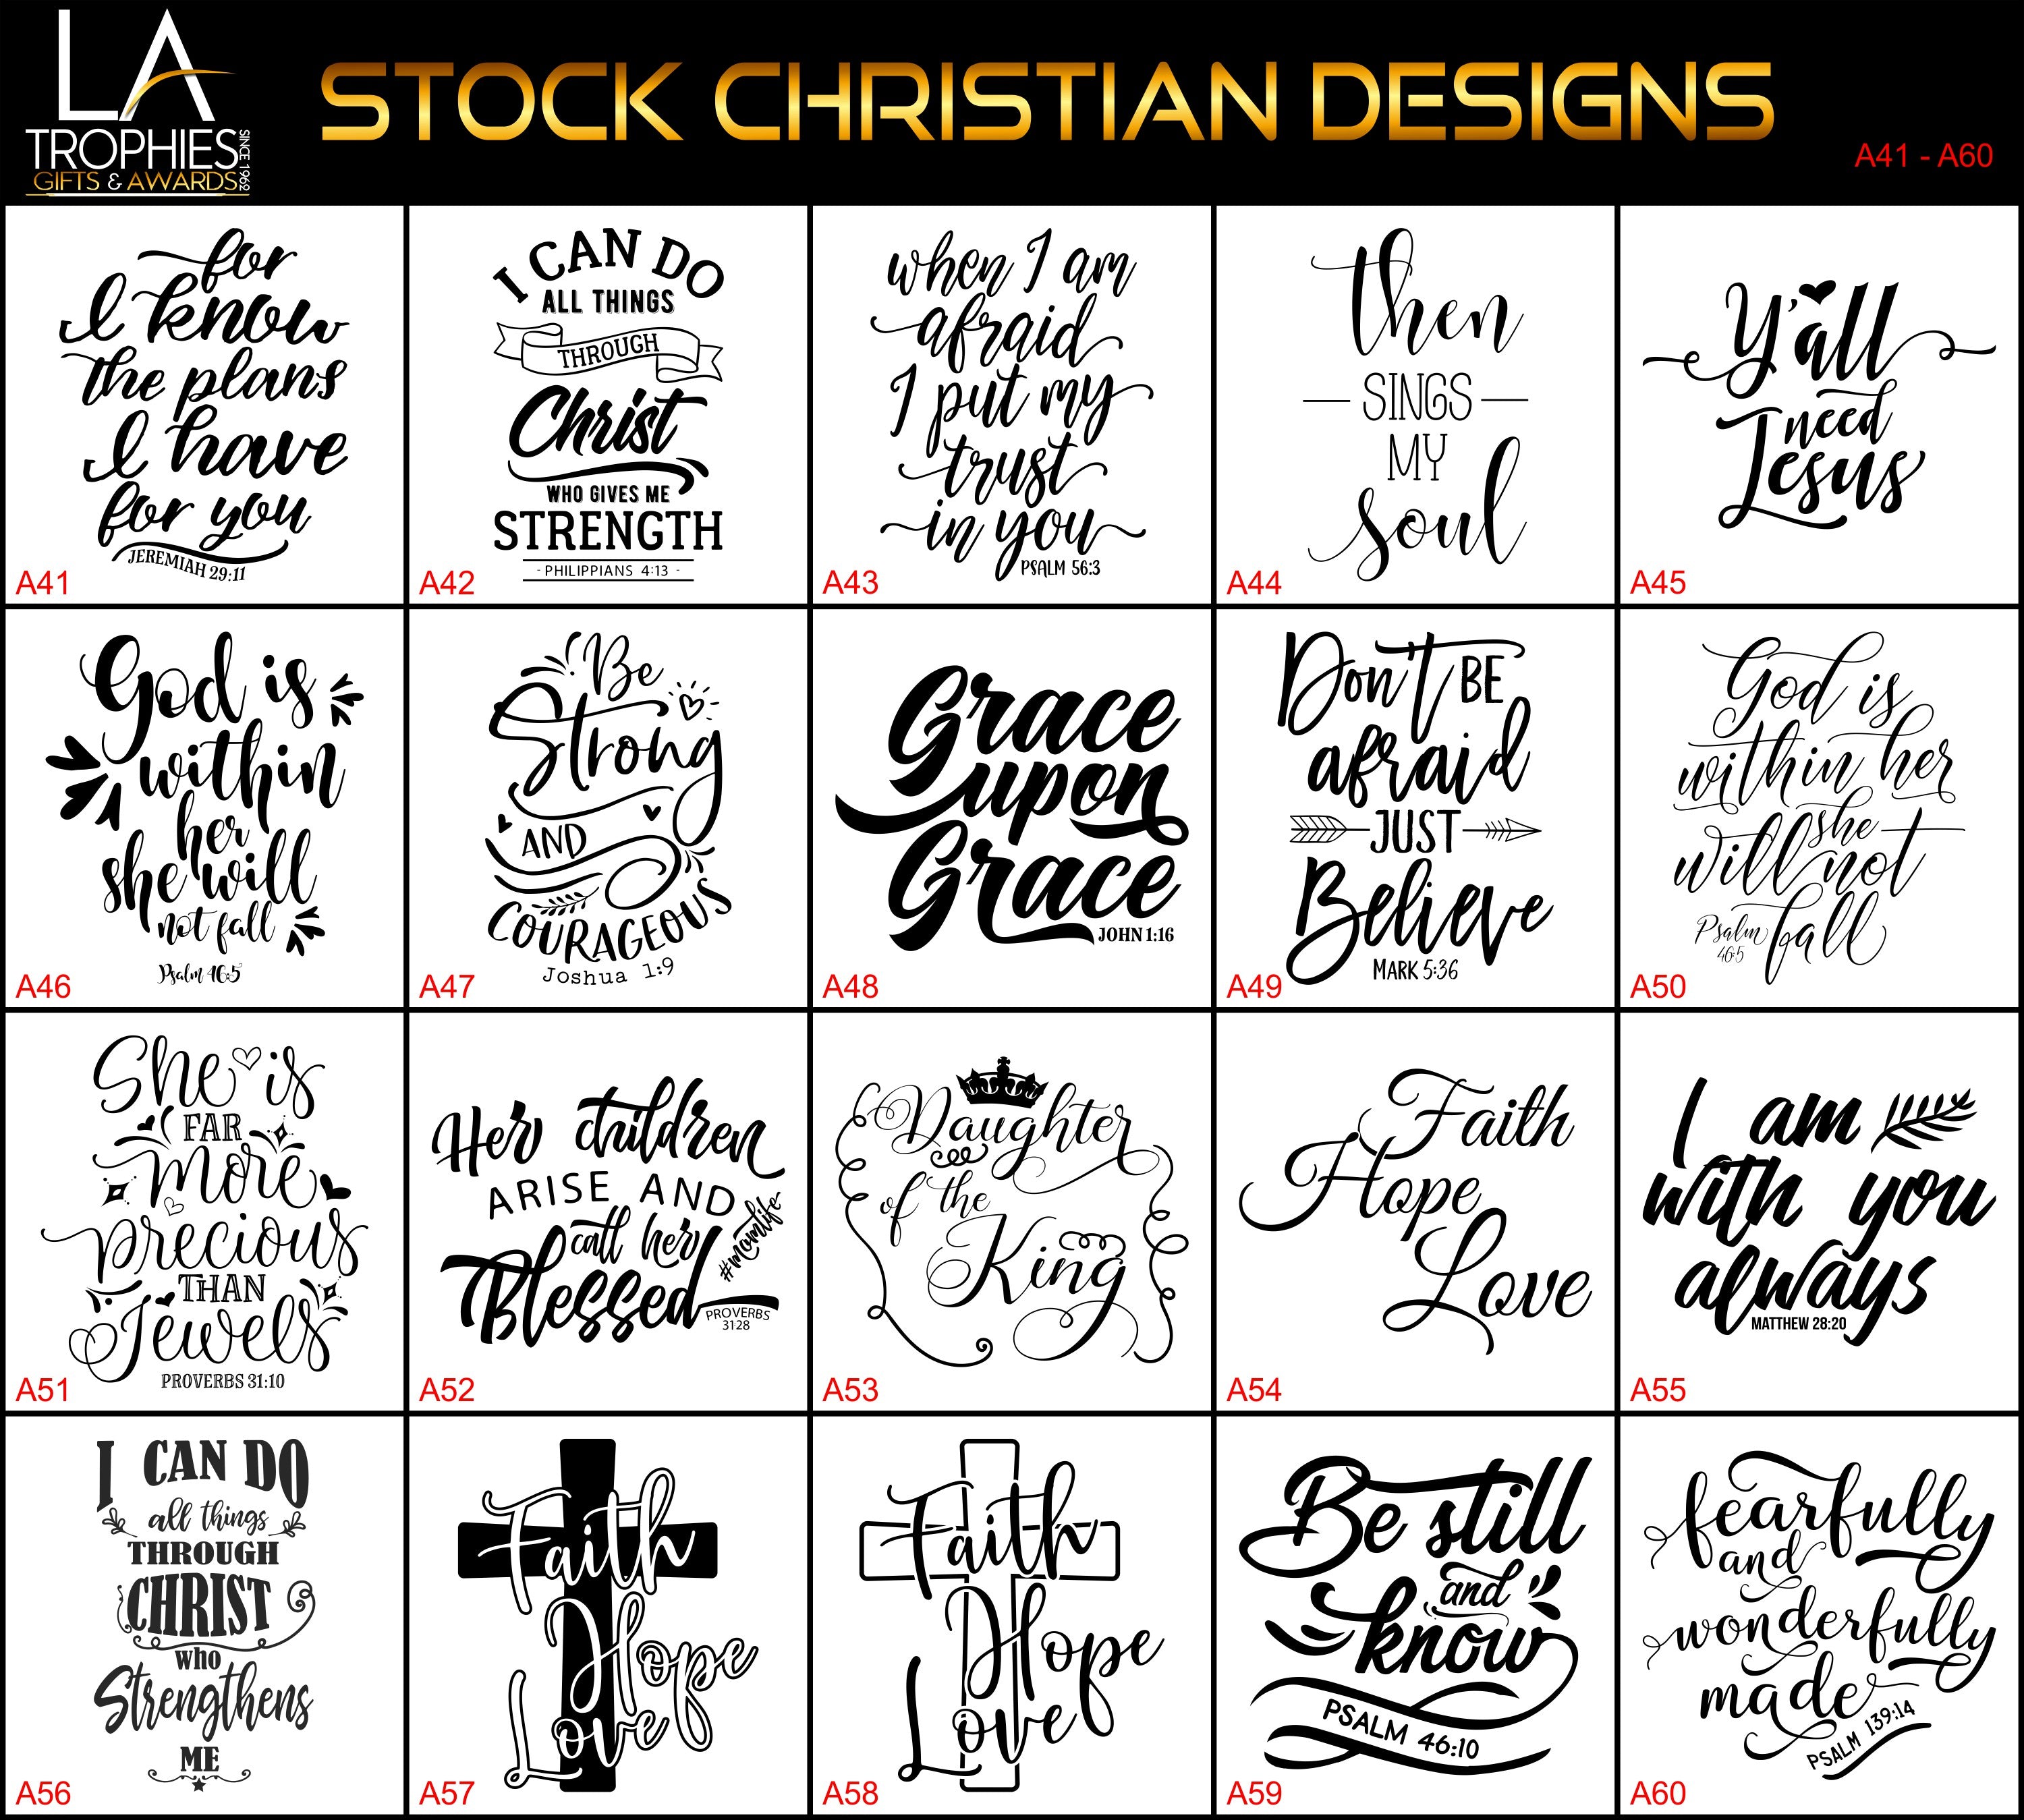 A41-A60 - Stock Christian Designs LA Trophies